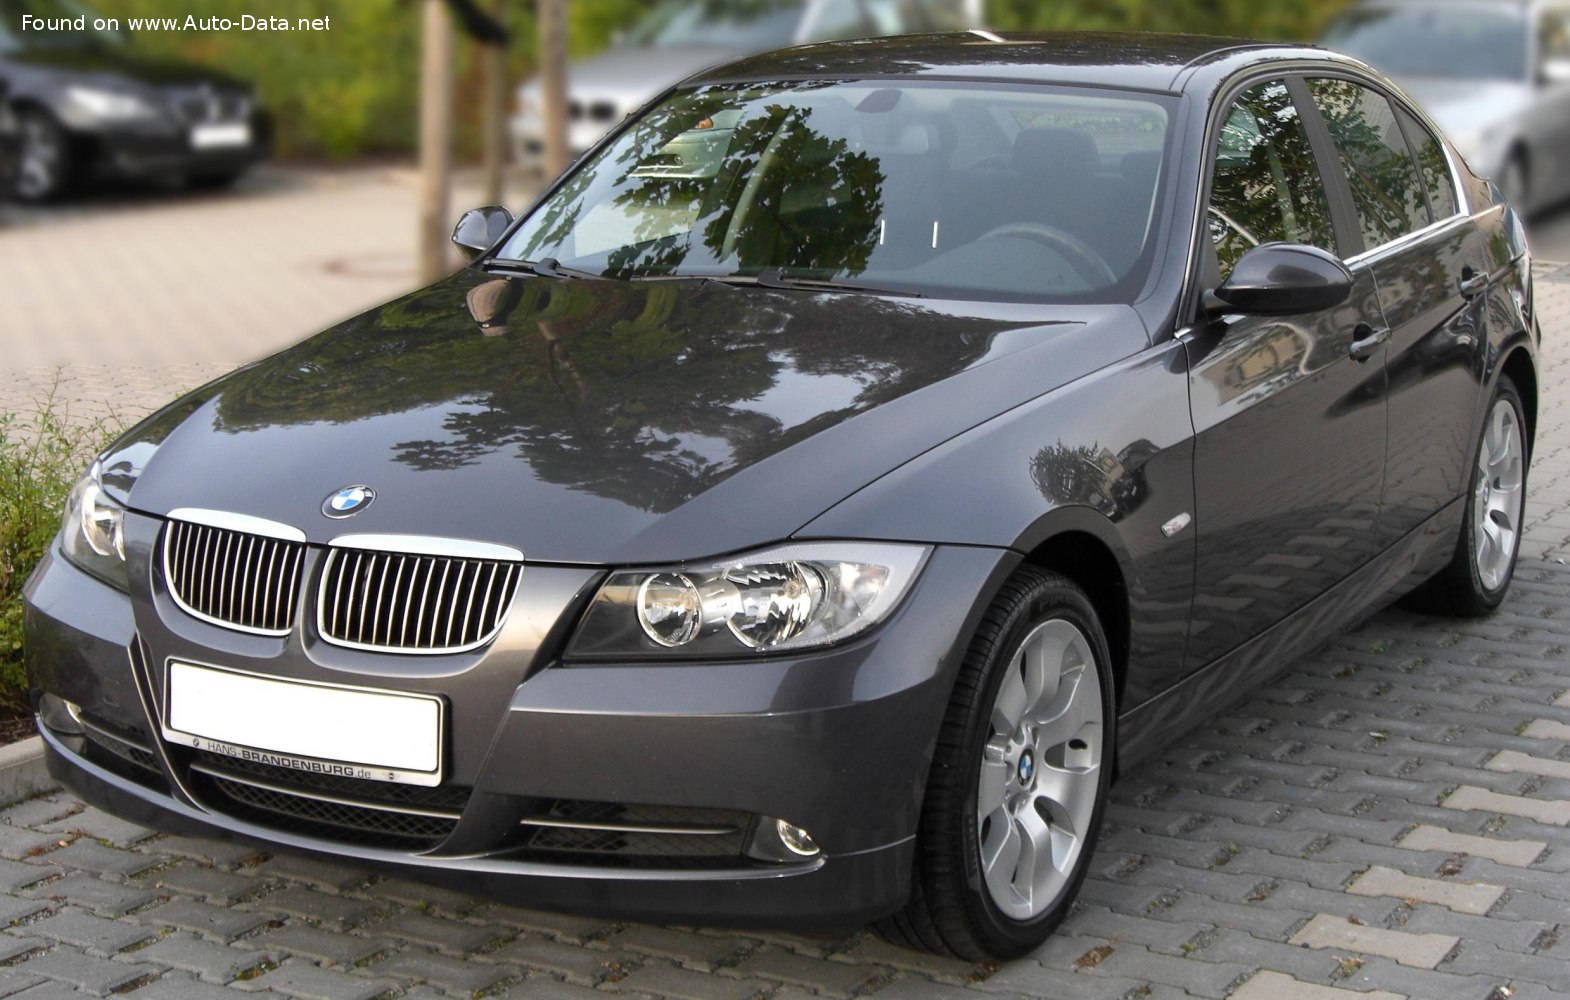 2005 BMW 3 Series Sedan (E90) 330i (258 Hp)  Technical specs, data, fuel  consumption, Dimensions